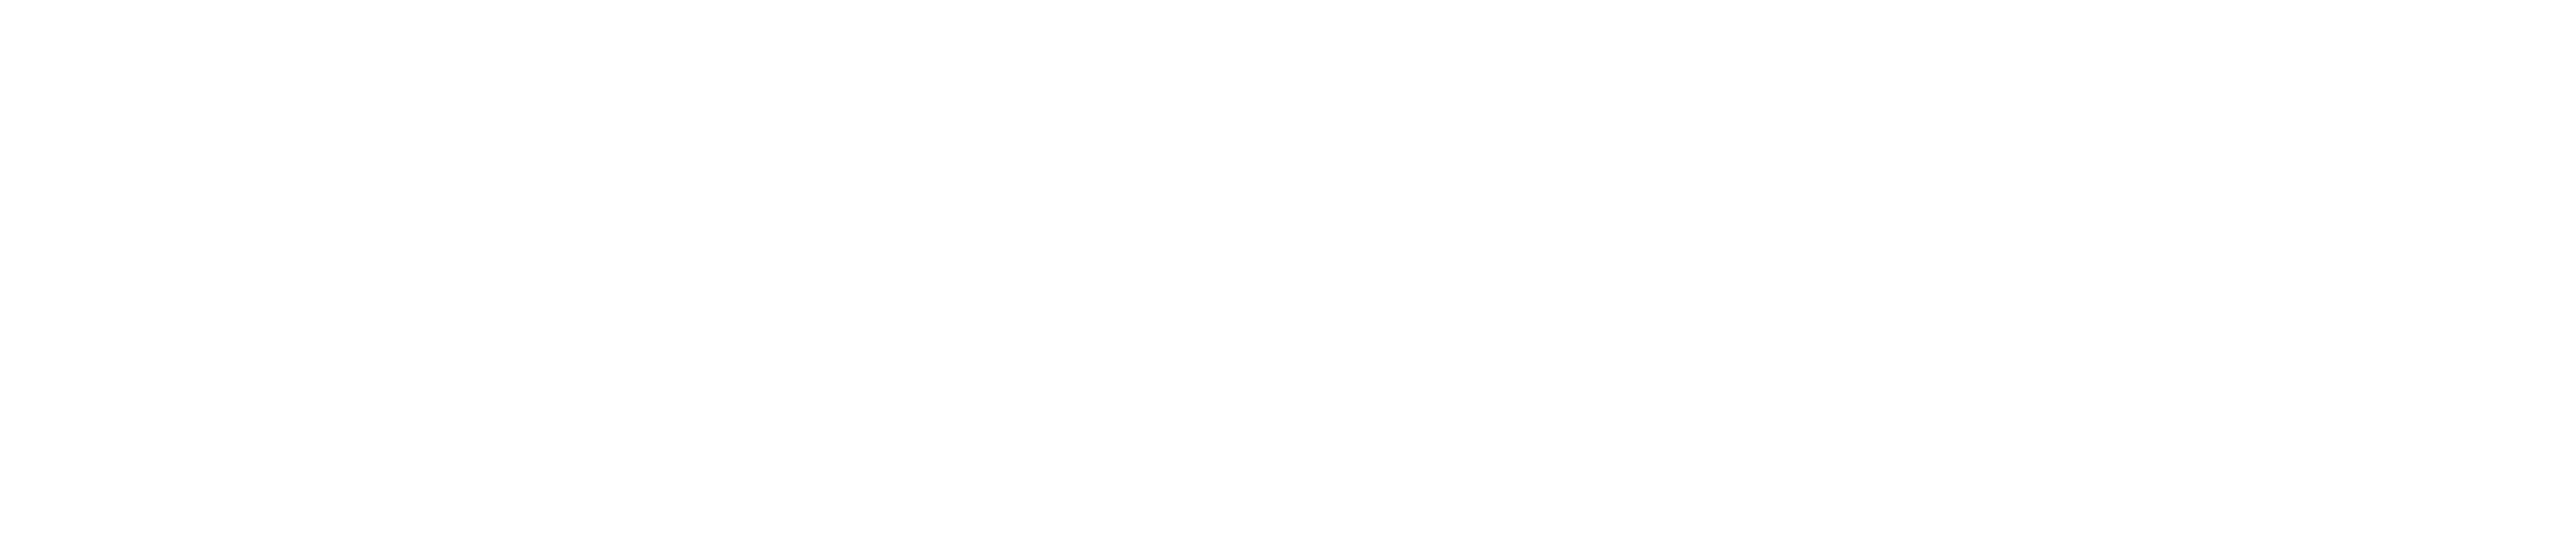 Advent Health University